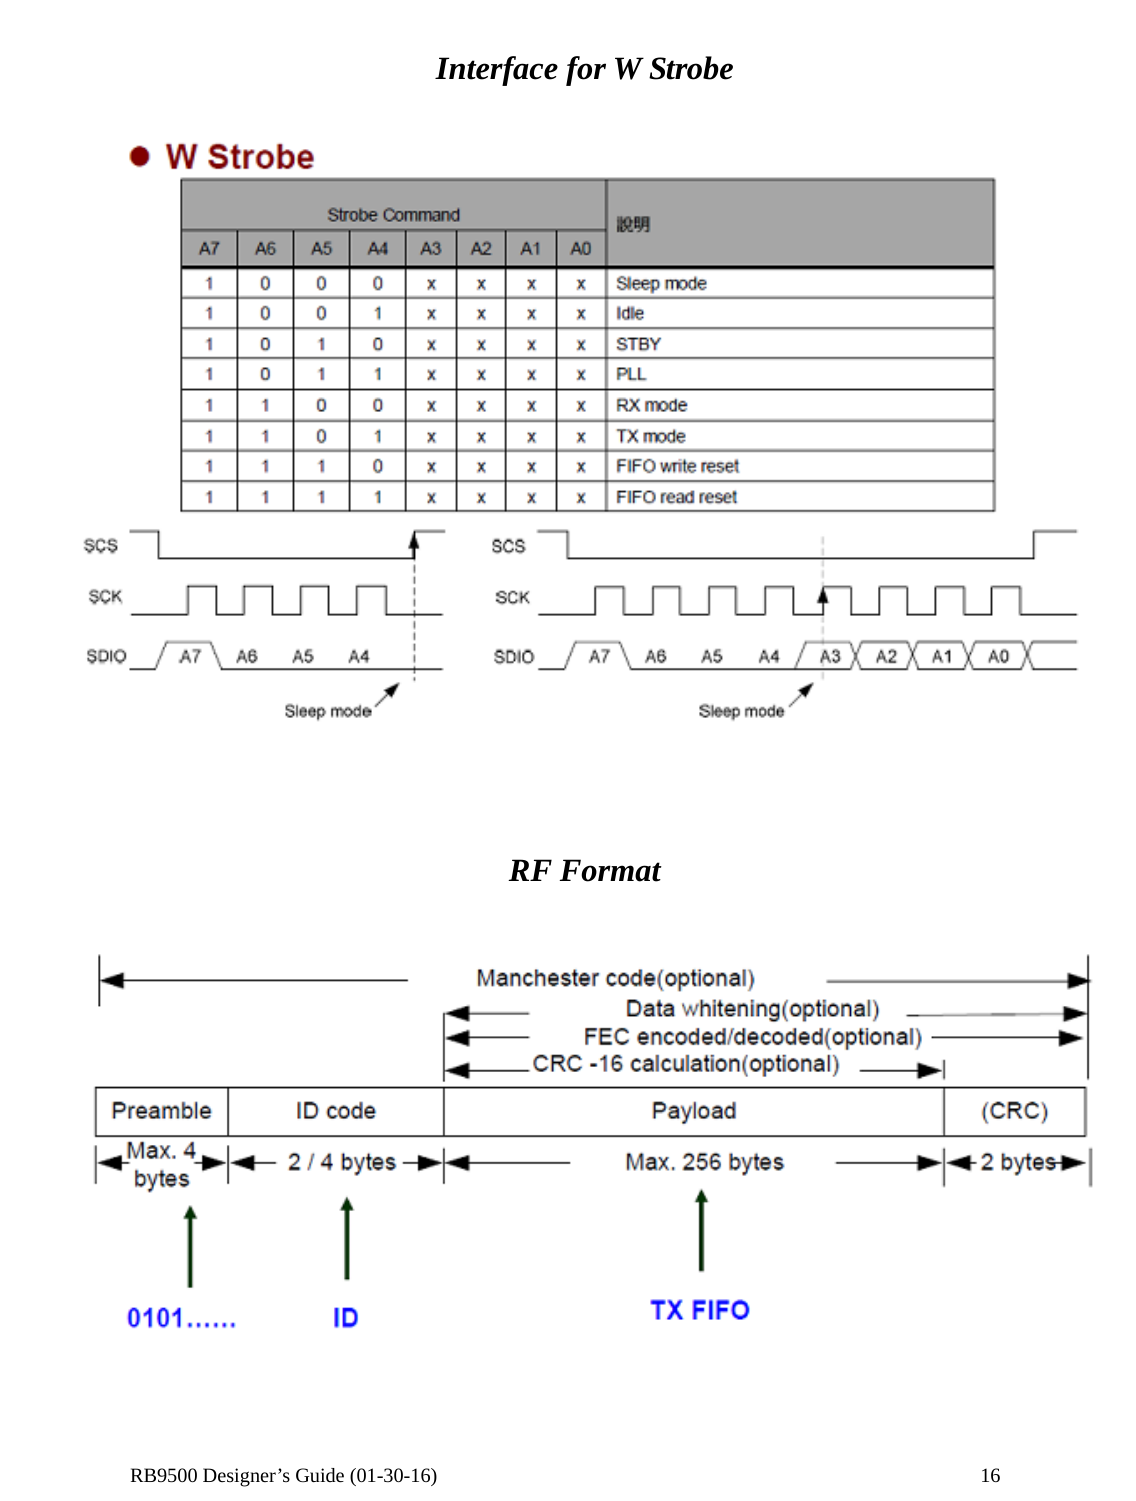  RB9500 Designer’s Guide (01-30-16)               16 Interface for W Strobe      RF Format     